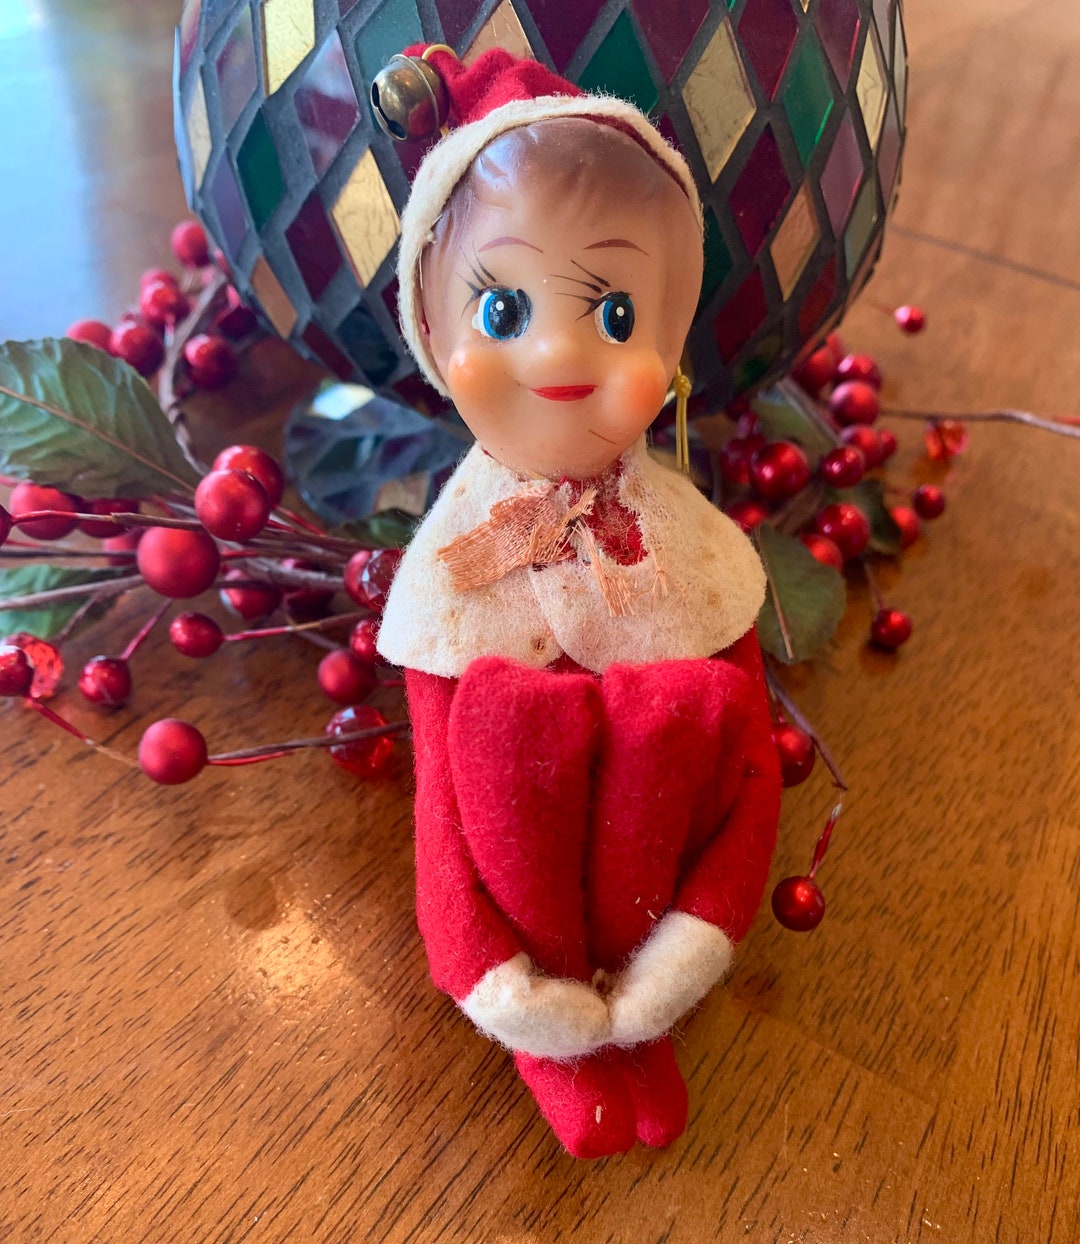 Vintage Elf Knee Hugger Christmas Ornament Figurine MCM Pixie - Etsy